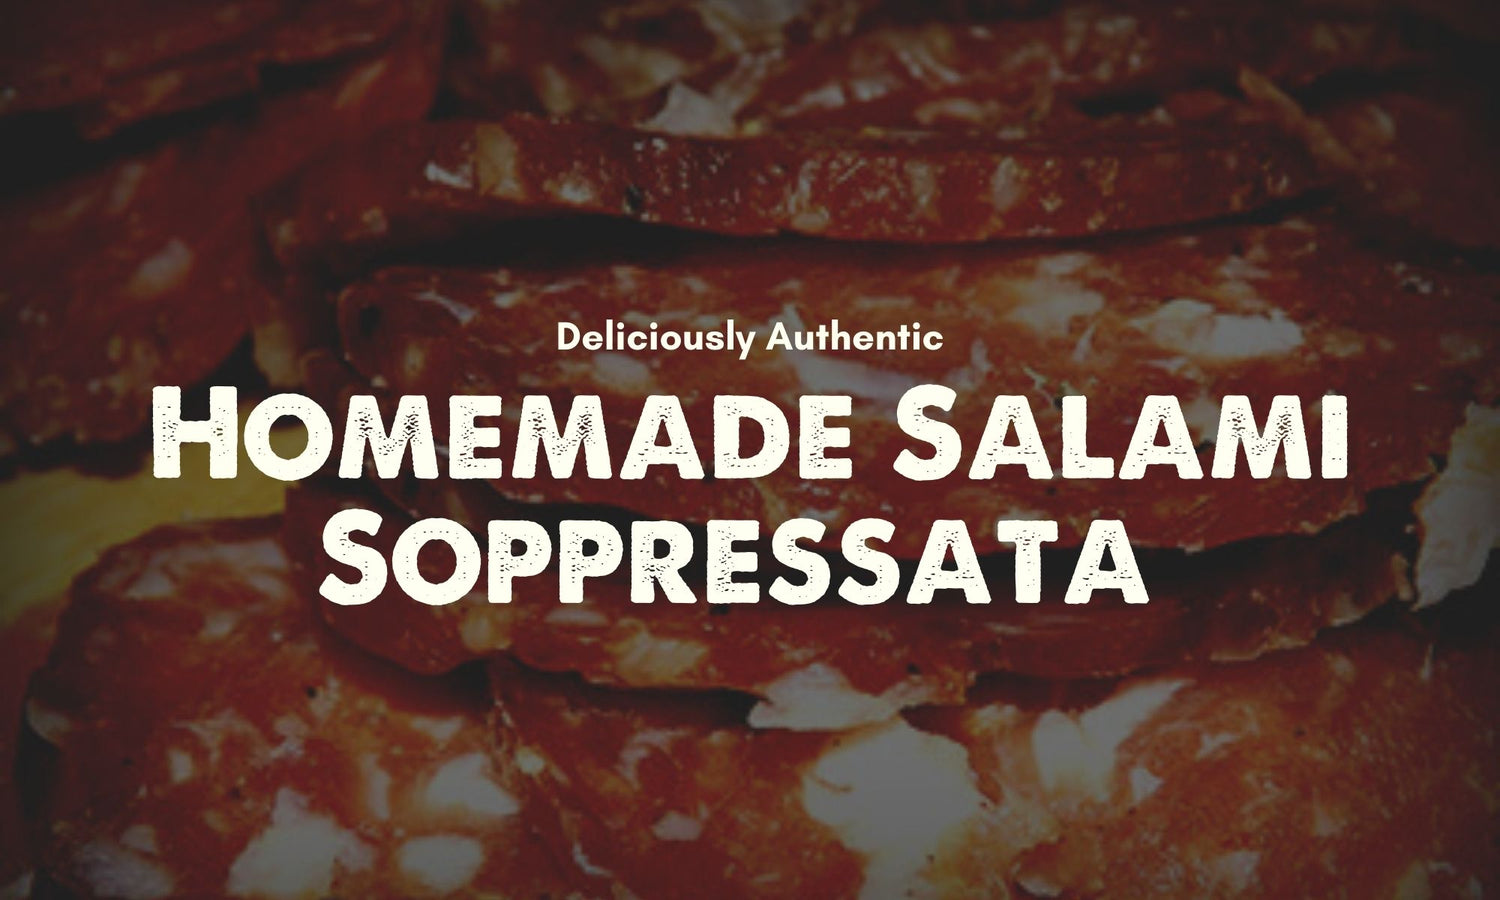 Homemade Salami Soppressata